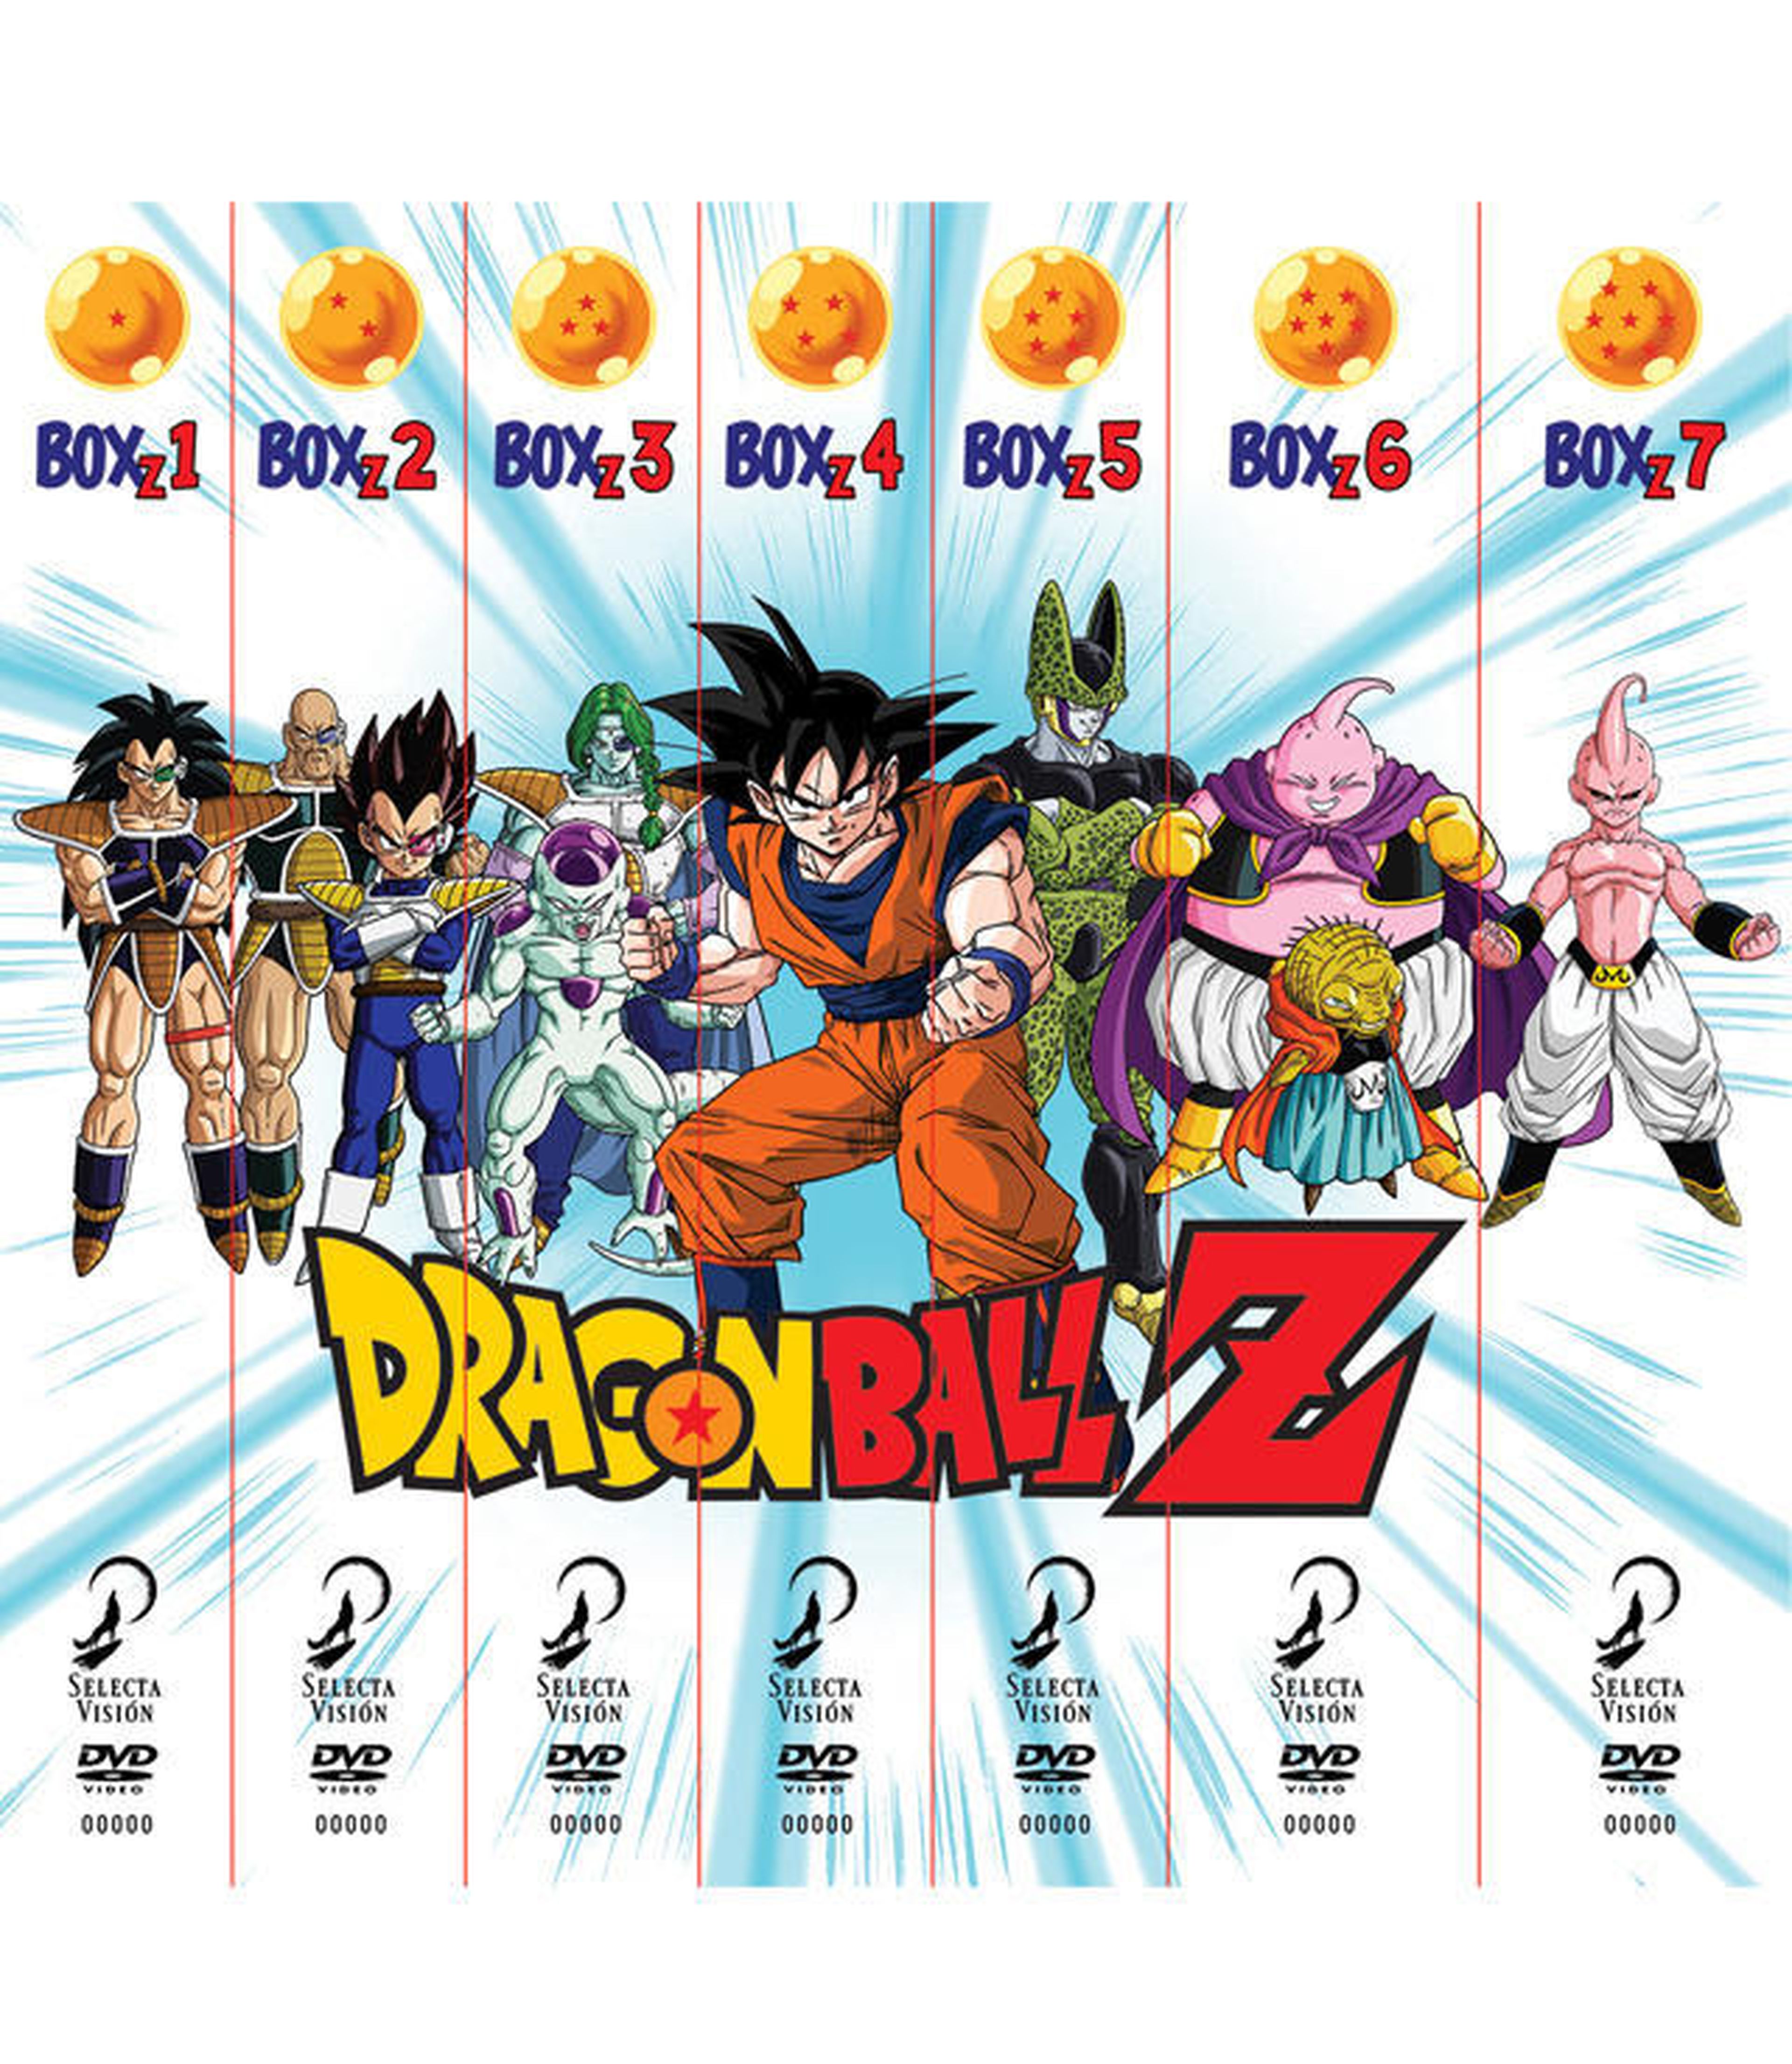 Dragon Ball Z serie completa concurso HC 300